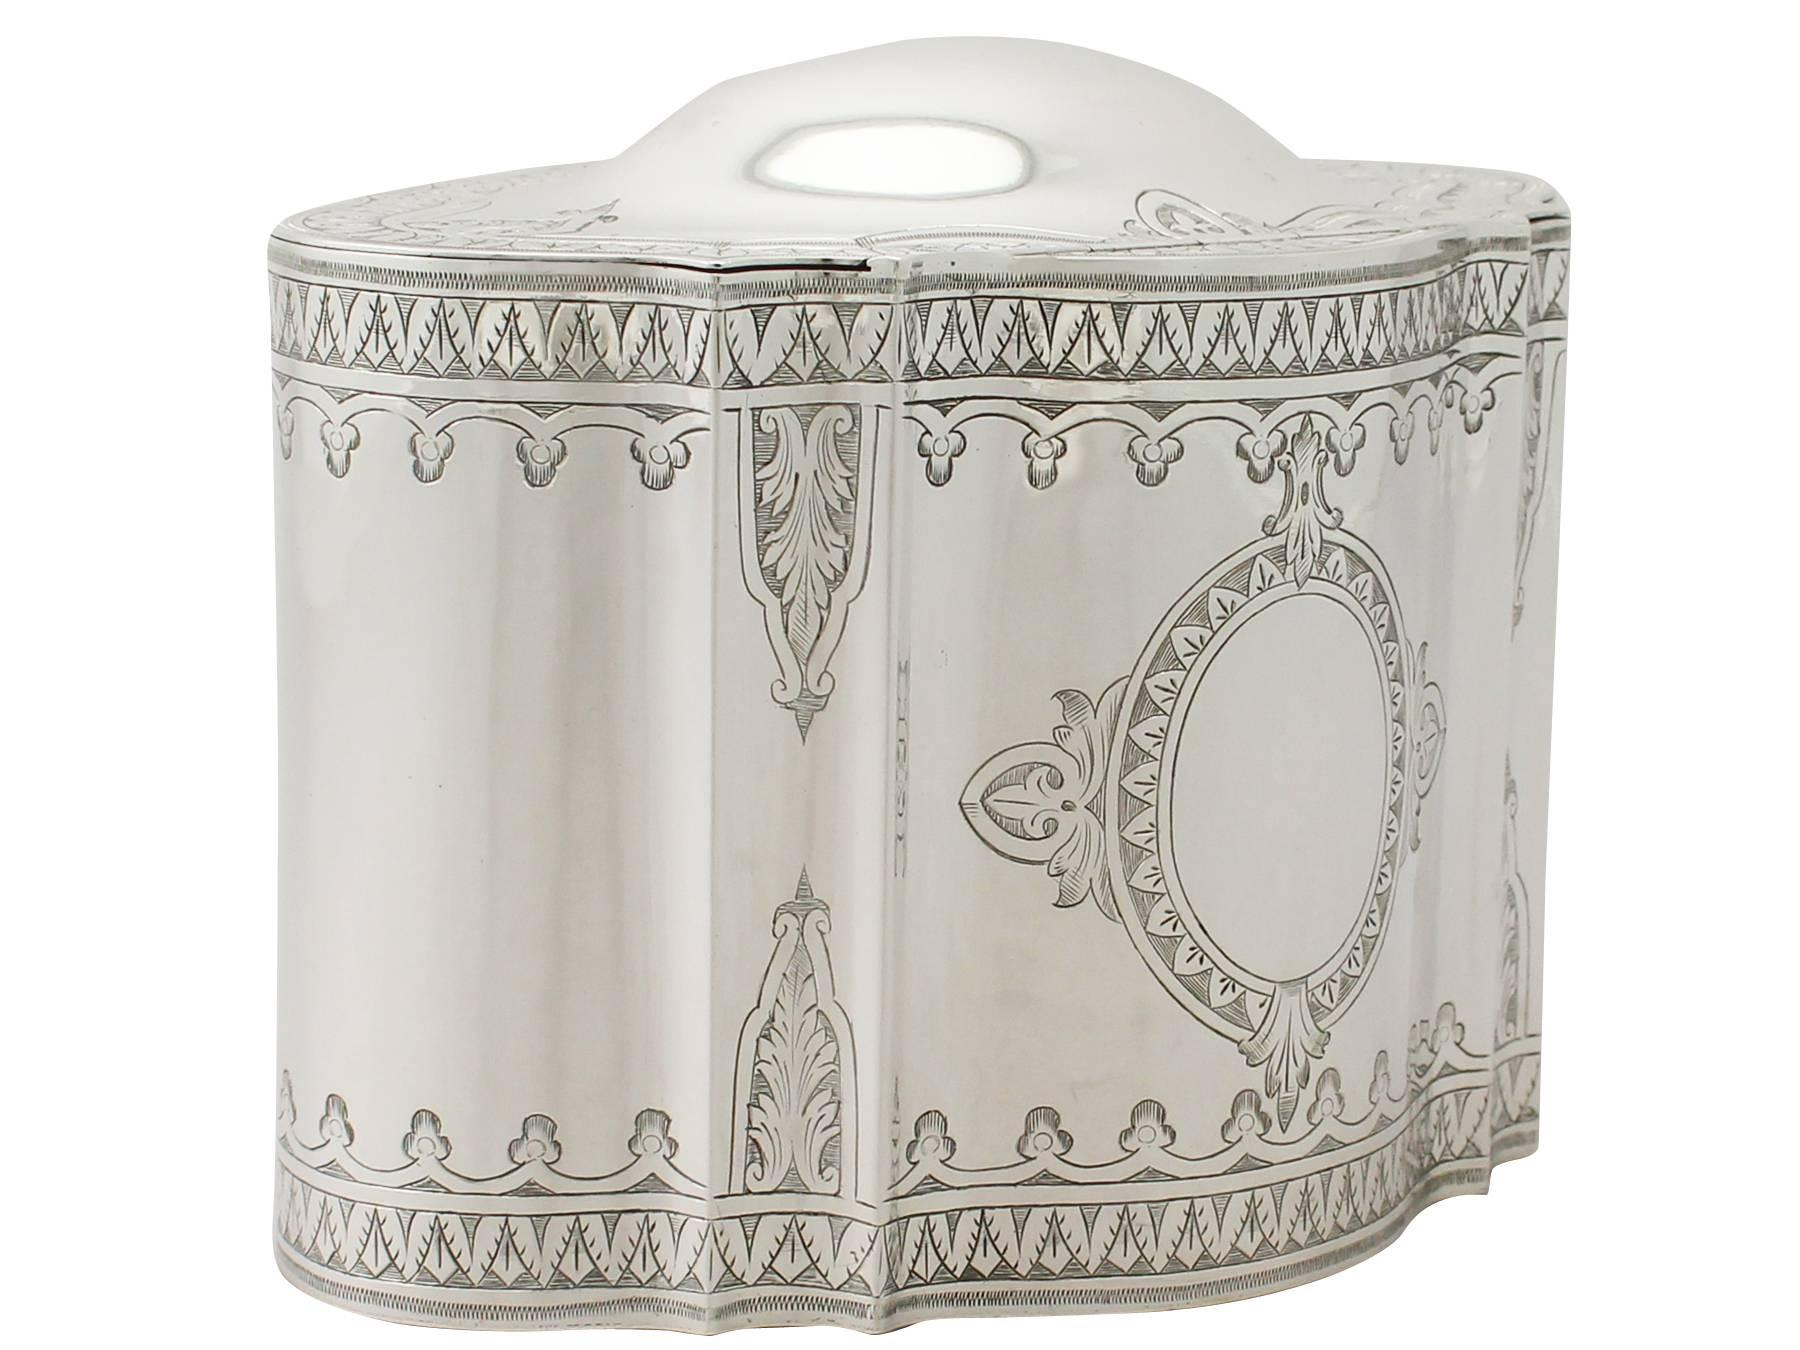 Eine außergewöhnliche, feine und beeindruckende, große antike viktorianische englische Sterling Silber Verriegelung Teedose; eine Ergänzung zu unserer Silber Teegeschirr Sammlung.

Diese außergewöhnliche antike viktorianische Teedose aus